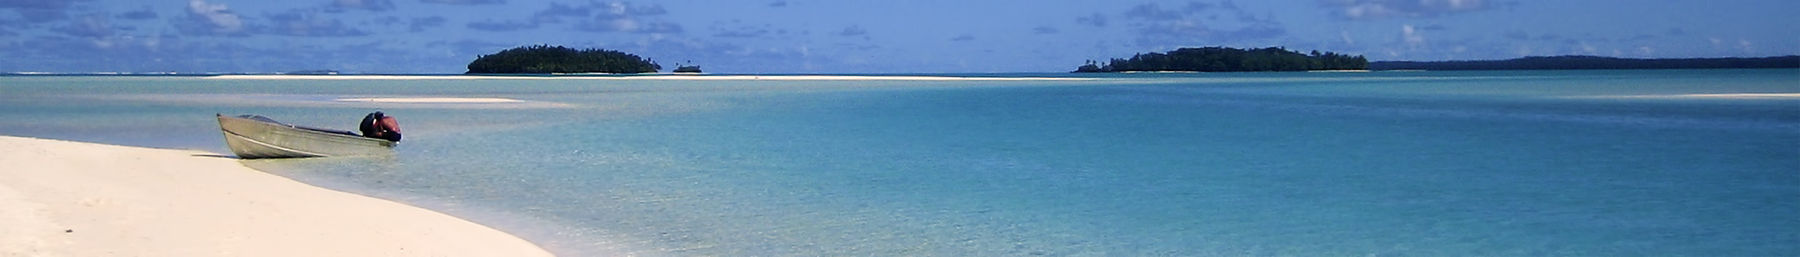 Cook Islands Beach banner.jpg